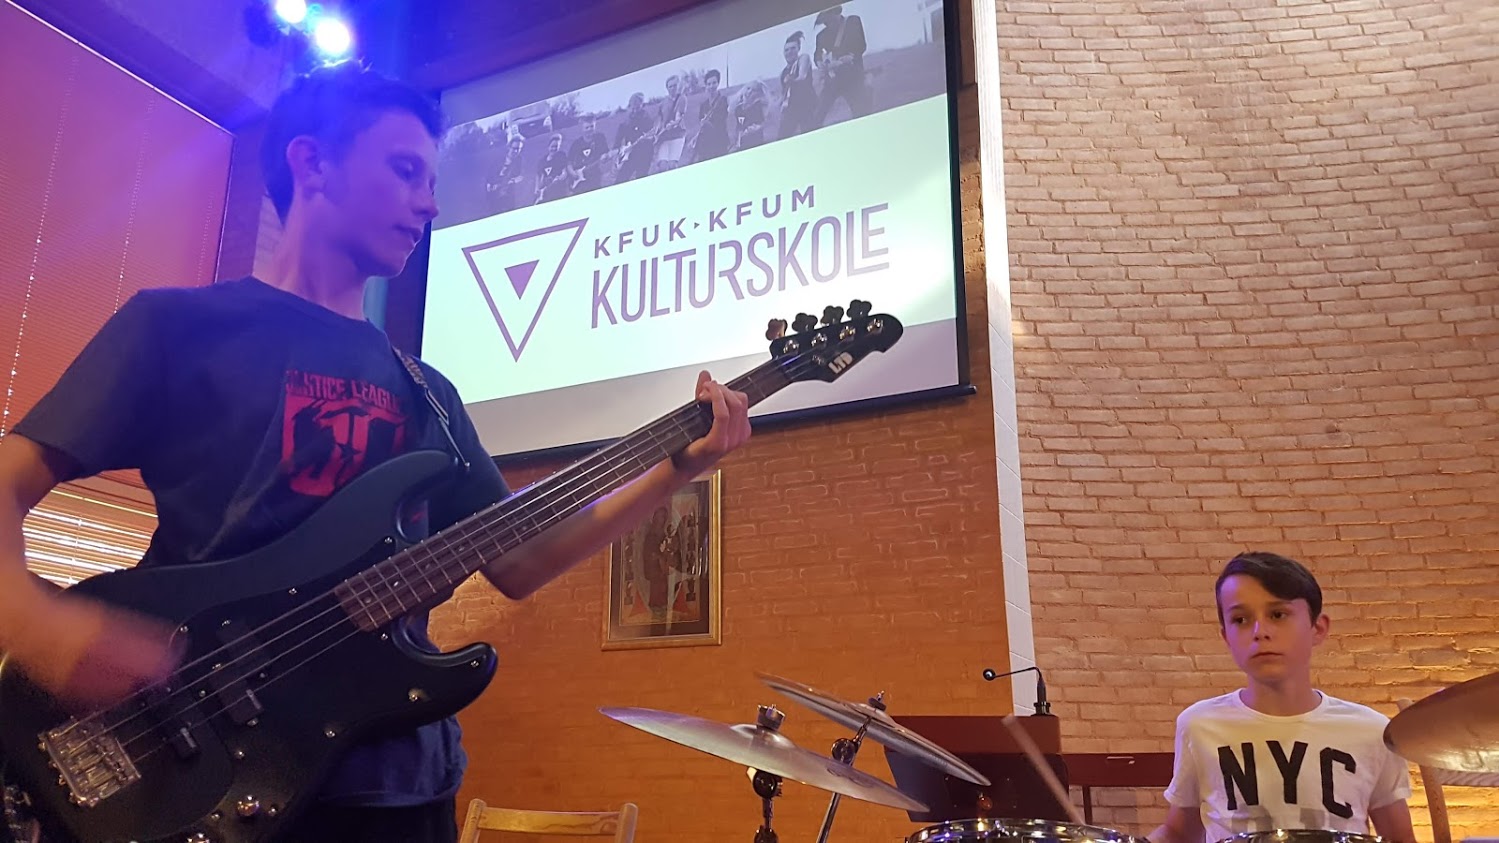 KFUK-KFUM Kulturskole